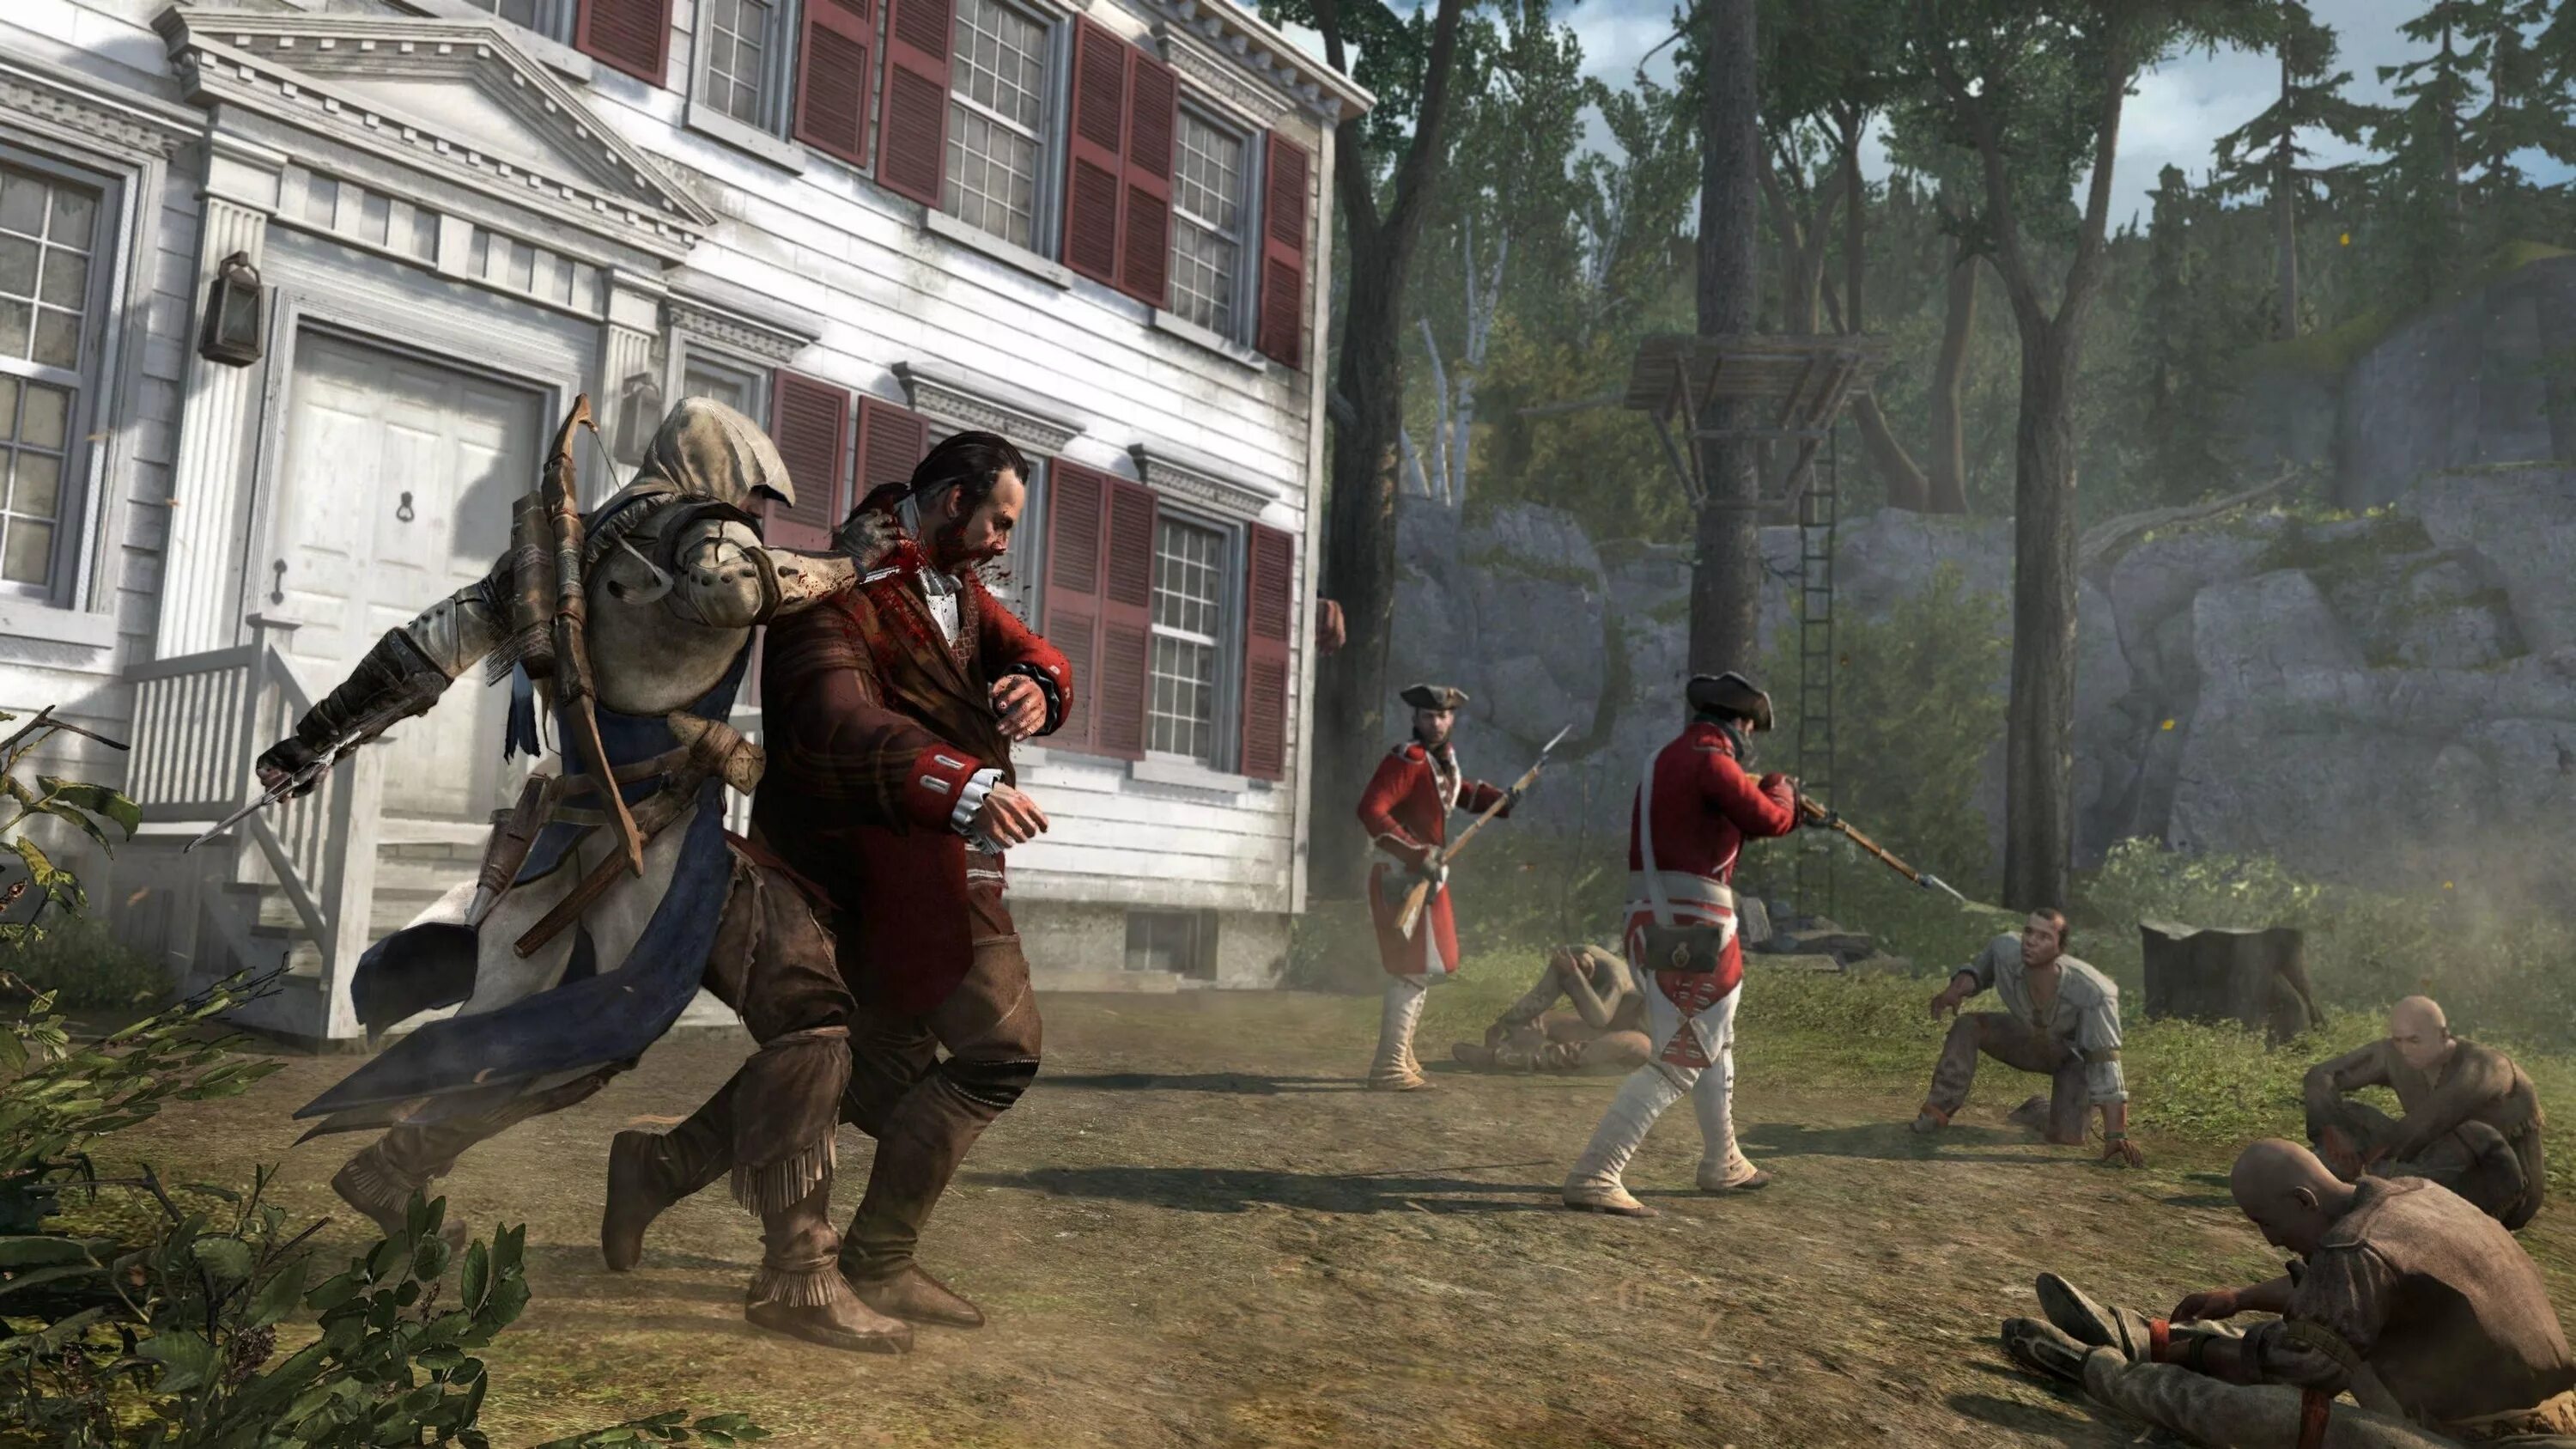 Включи крид 3. Ассасин Крид 3. Assassin's Creed III геймплей. Assassin’s Creed III – 2012. Assassin's Creed 3 геймплей.